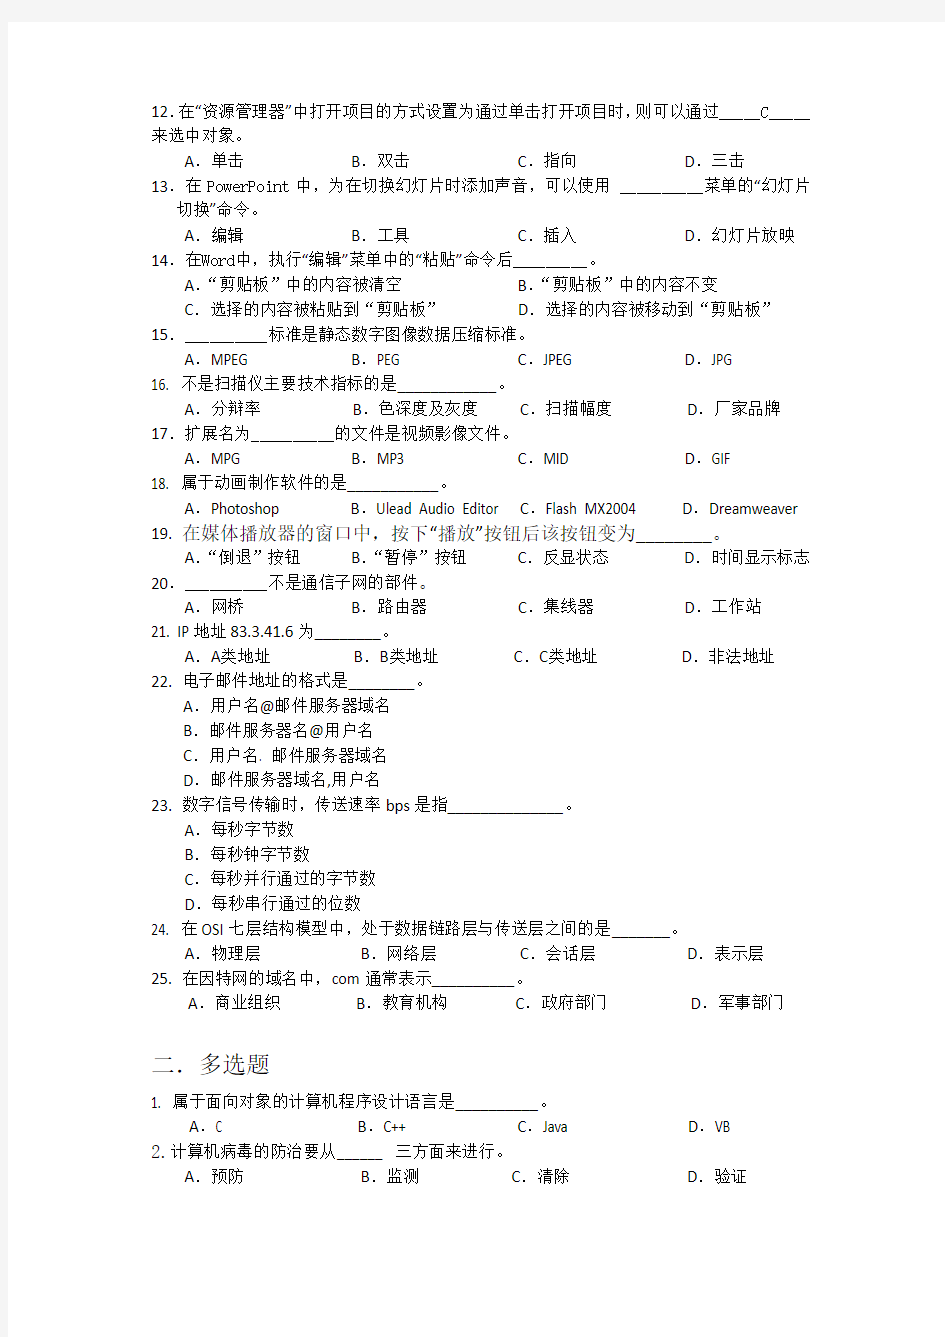 上海市计算机一级考试-(题目+答案)